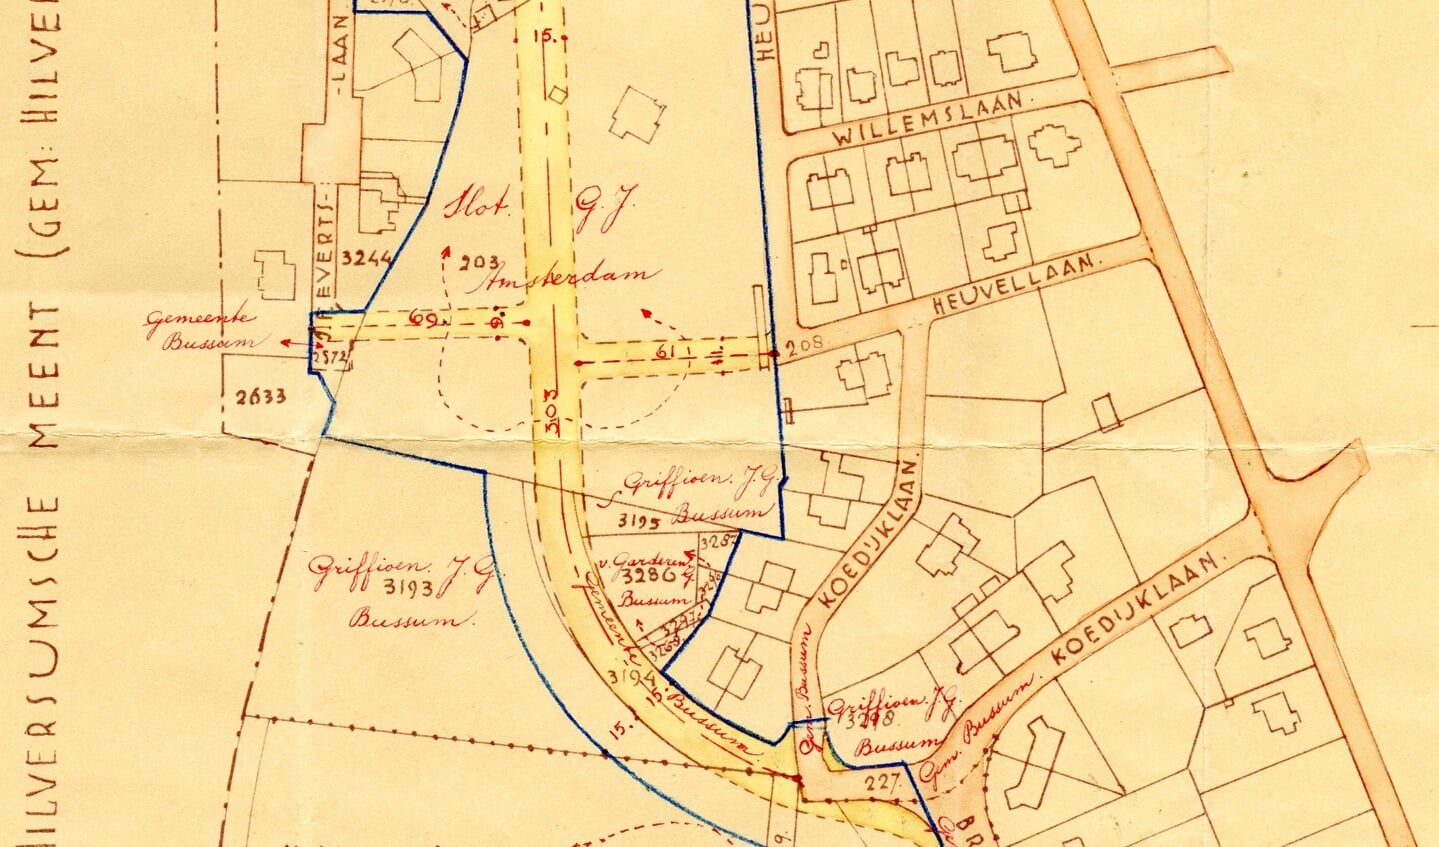 Het plan van Herman Sijmons uit 1934 (in het blauwe vak). Aangegeven is, van wie grond gekocht moet worden.